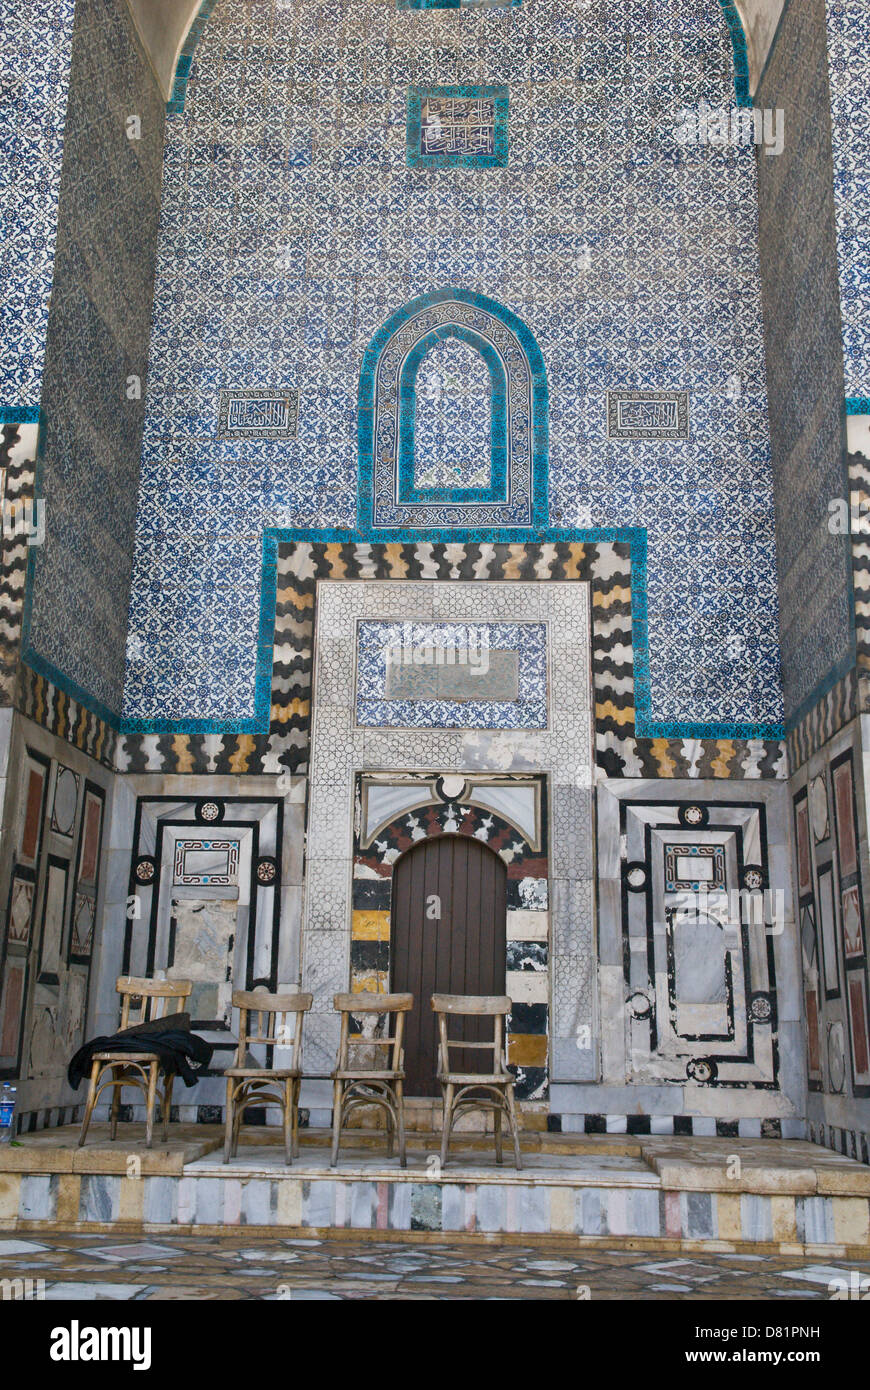 Beitt (esca) Jumblatt, Aleppo, Siria. Il portico - iwan - di un vecchio cinquecentesco palazzo ottomano con geometrica delle piastrelle di ceramica. Foto Stock